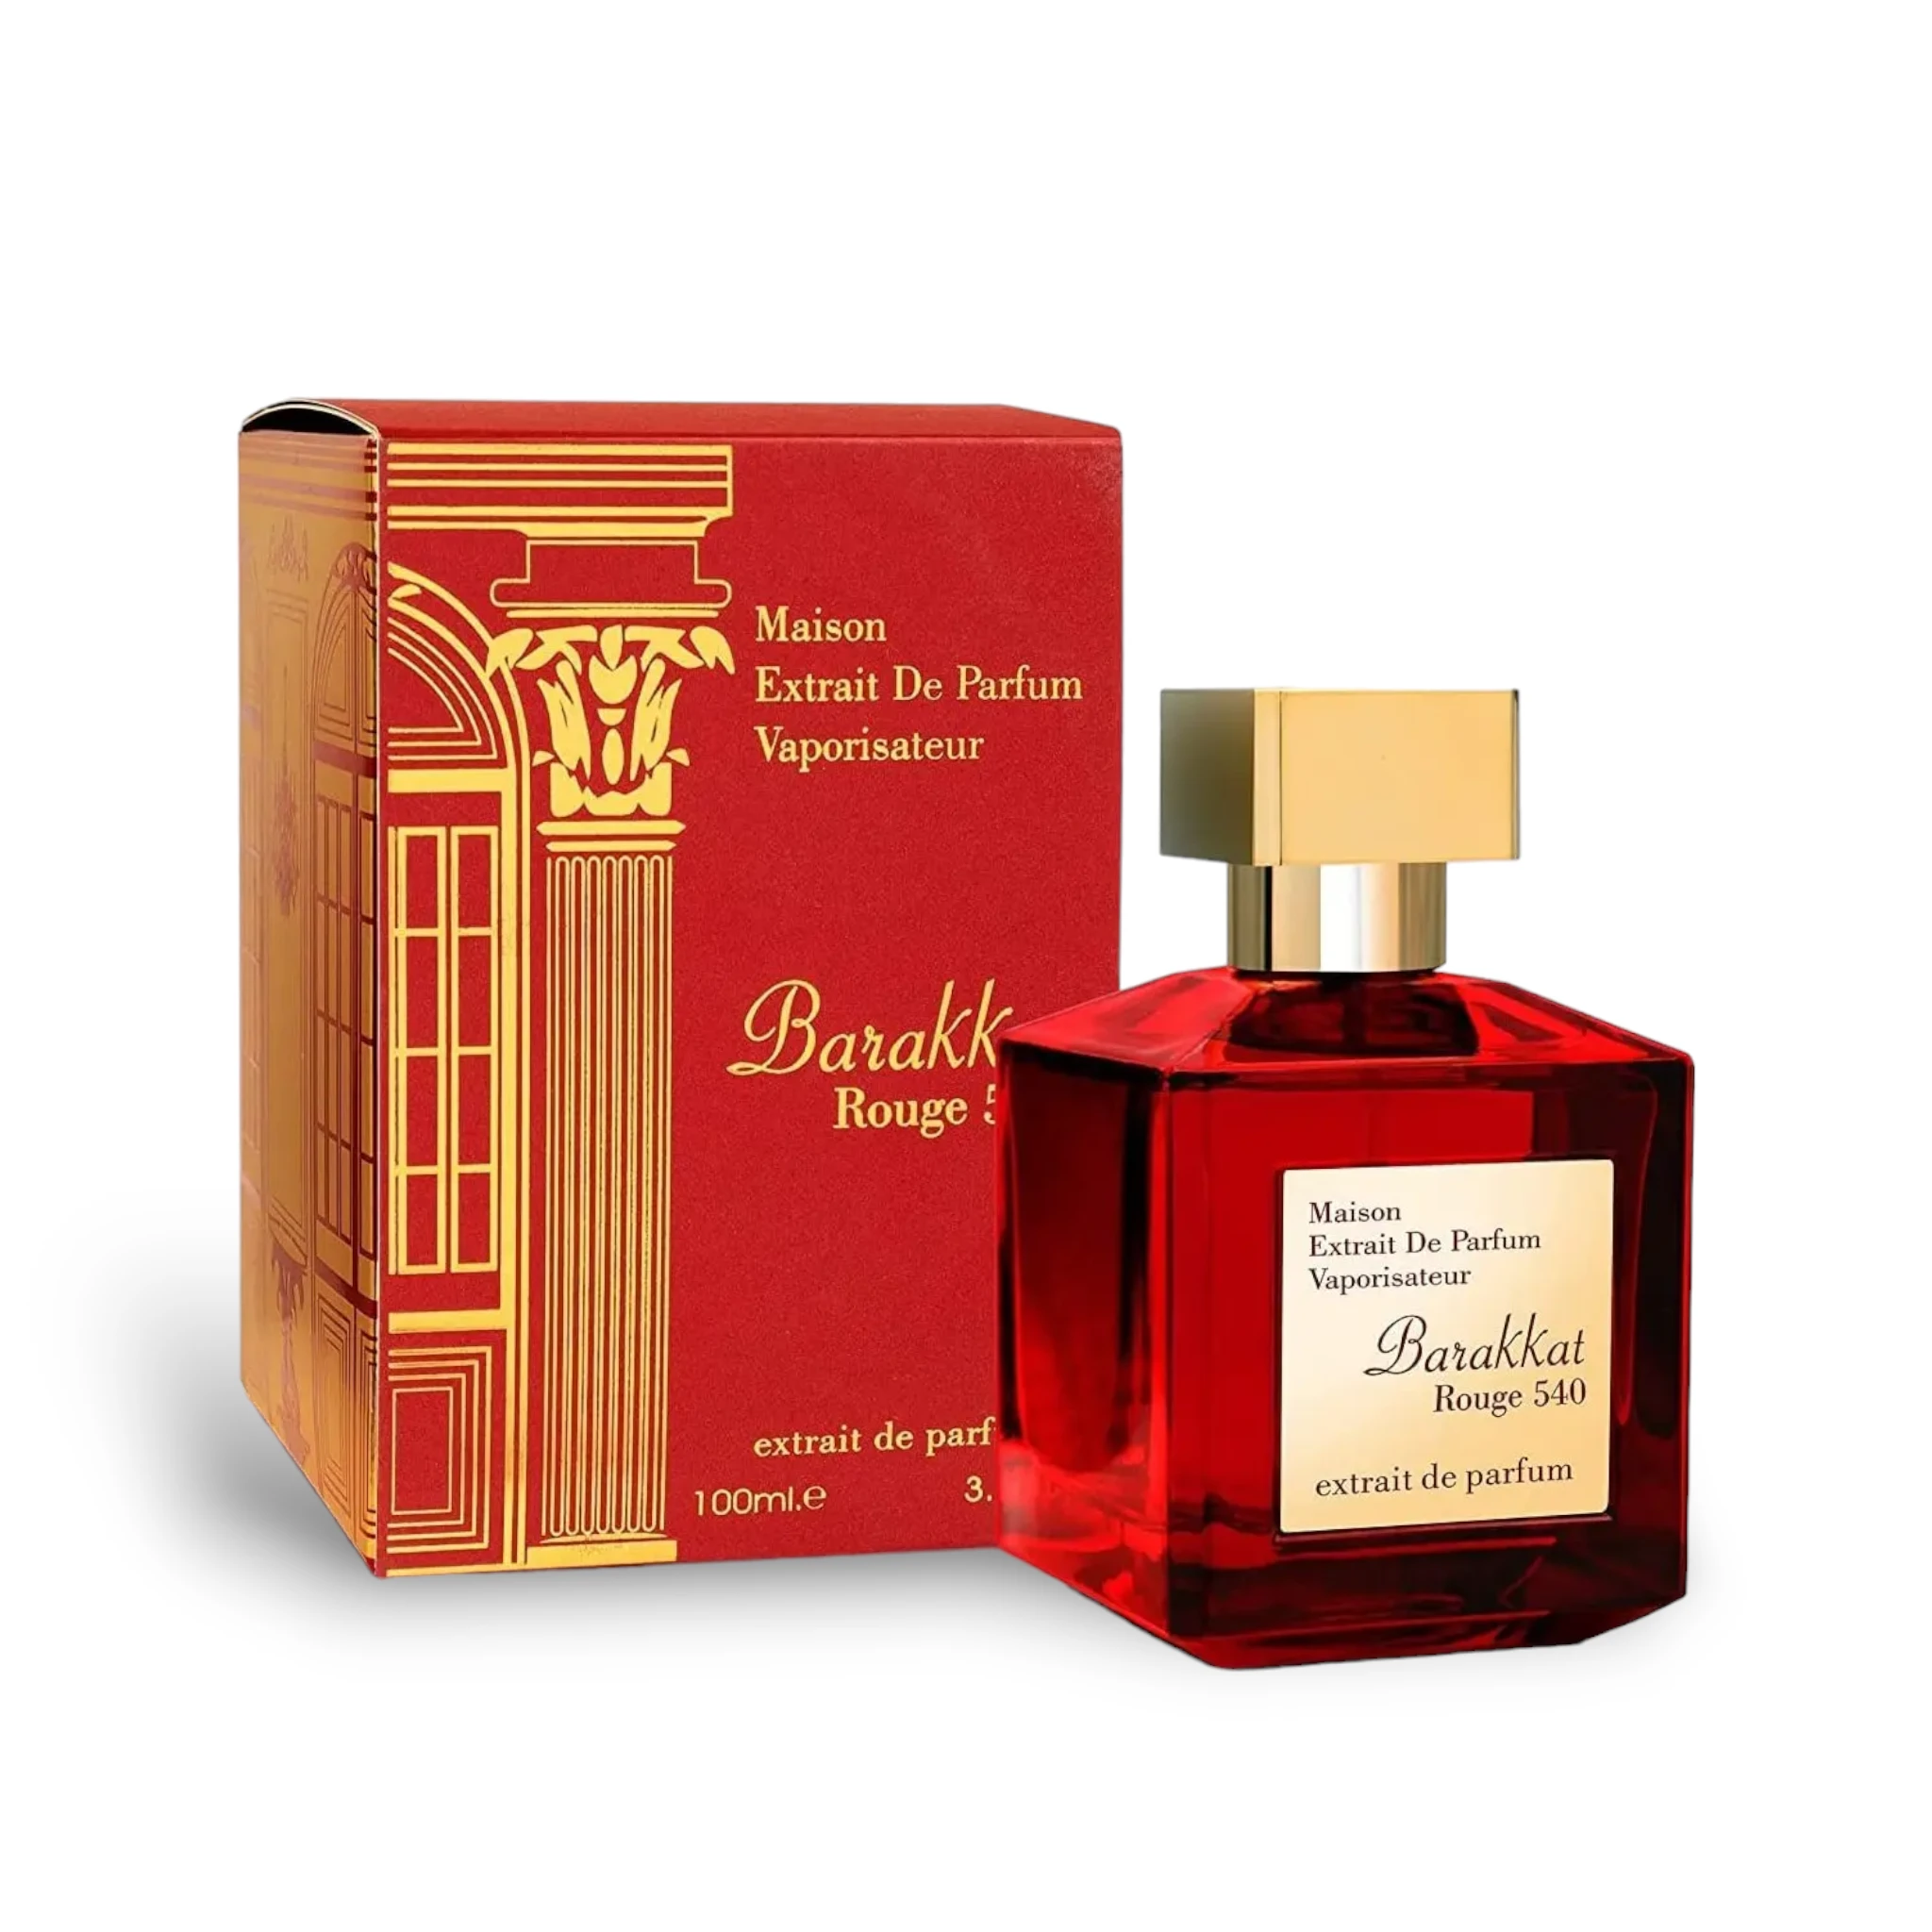 Barakkat Rouge 540 100Ml Extrait De Parfum By Fragrance World